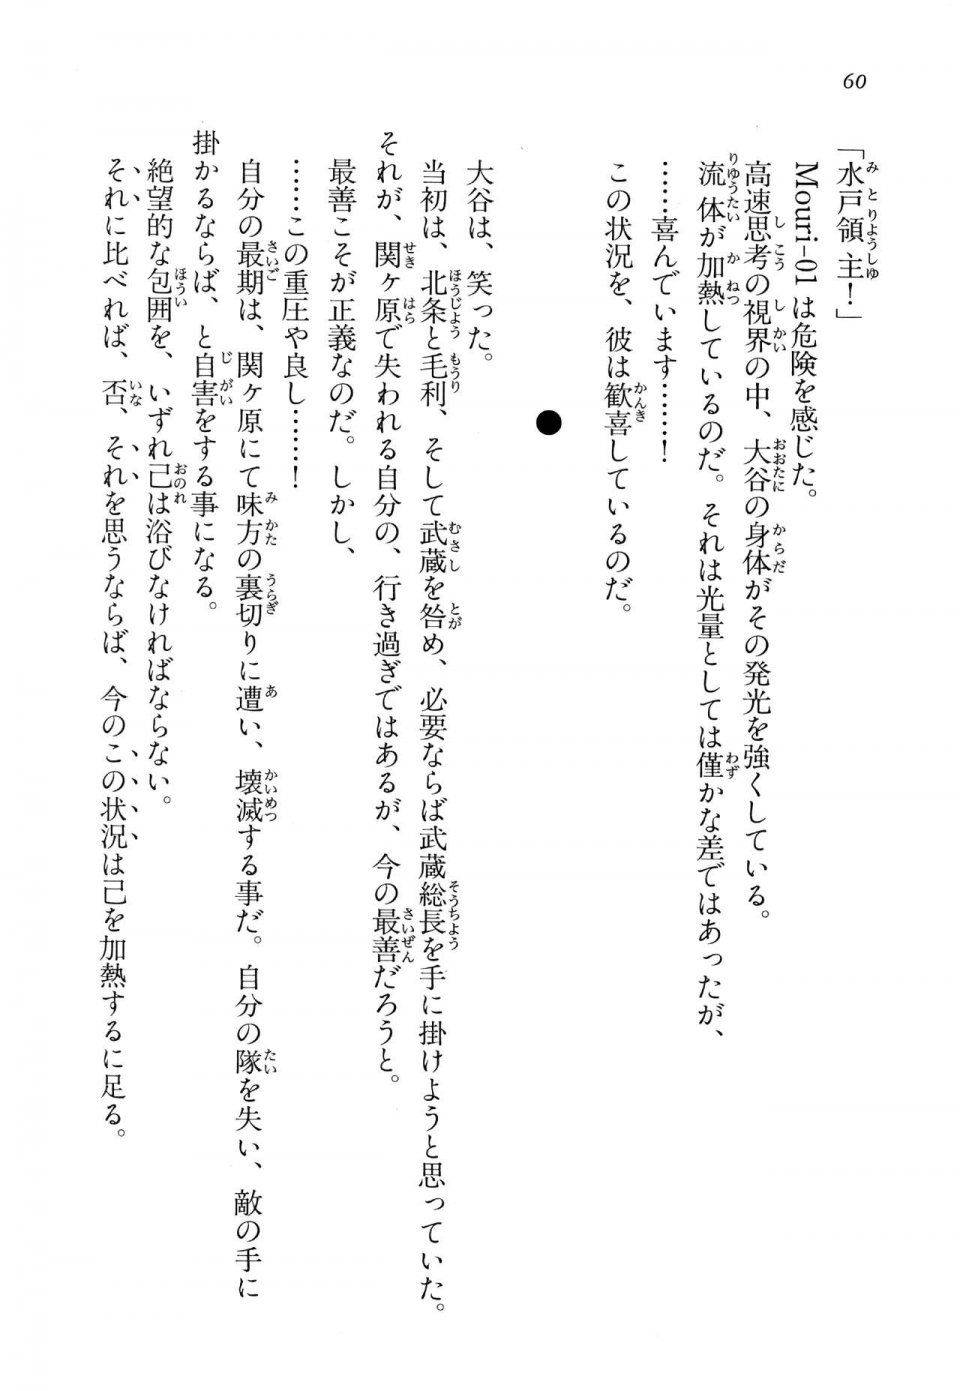 Kyoukai Senjou no Horizon LN Vol 14(6B) - Photo #60